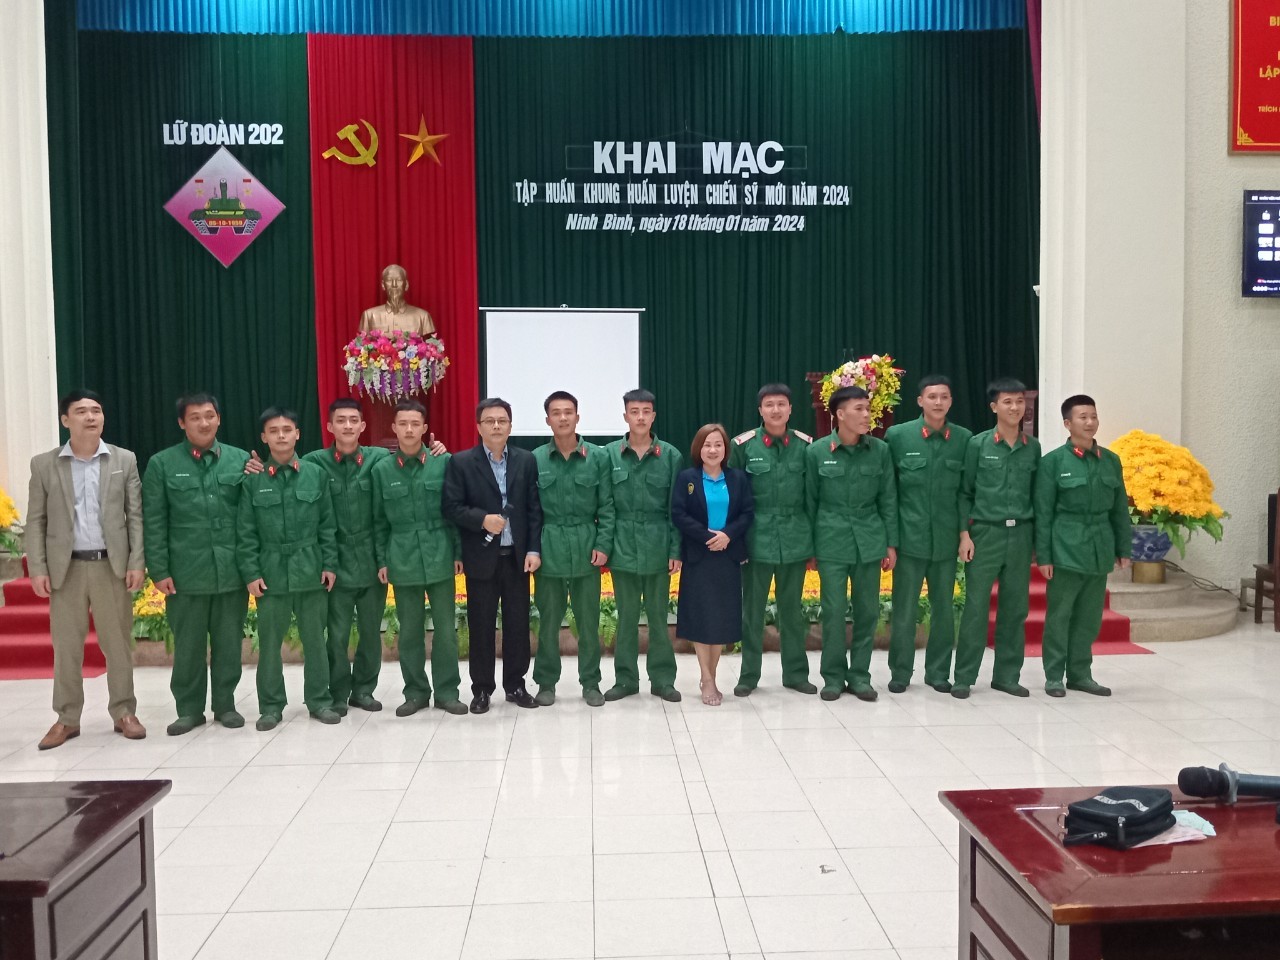 TTTCUNL- Cơ hội việc làm ngành hàng không cho hạ sỹ quan, chiến sỹ Lữ đoàn 202 Tăng thiết giáp Tam Điệp, Ninh Bình